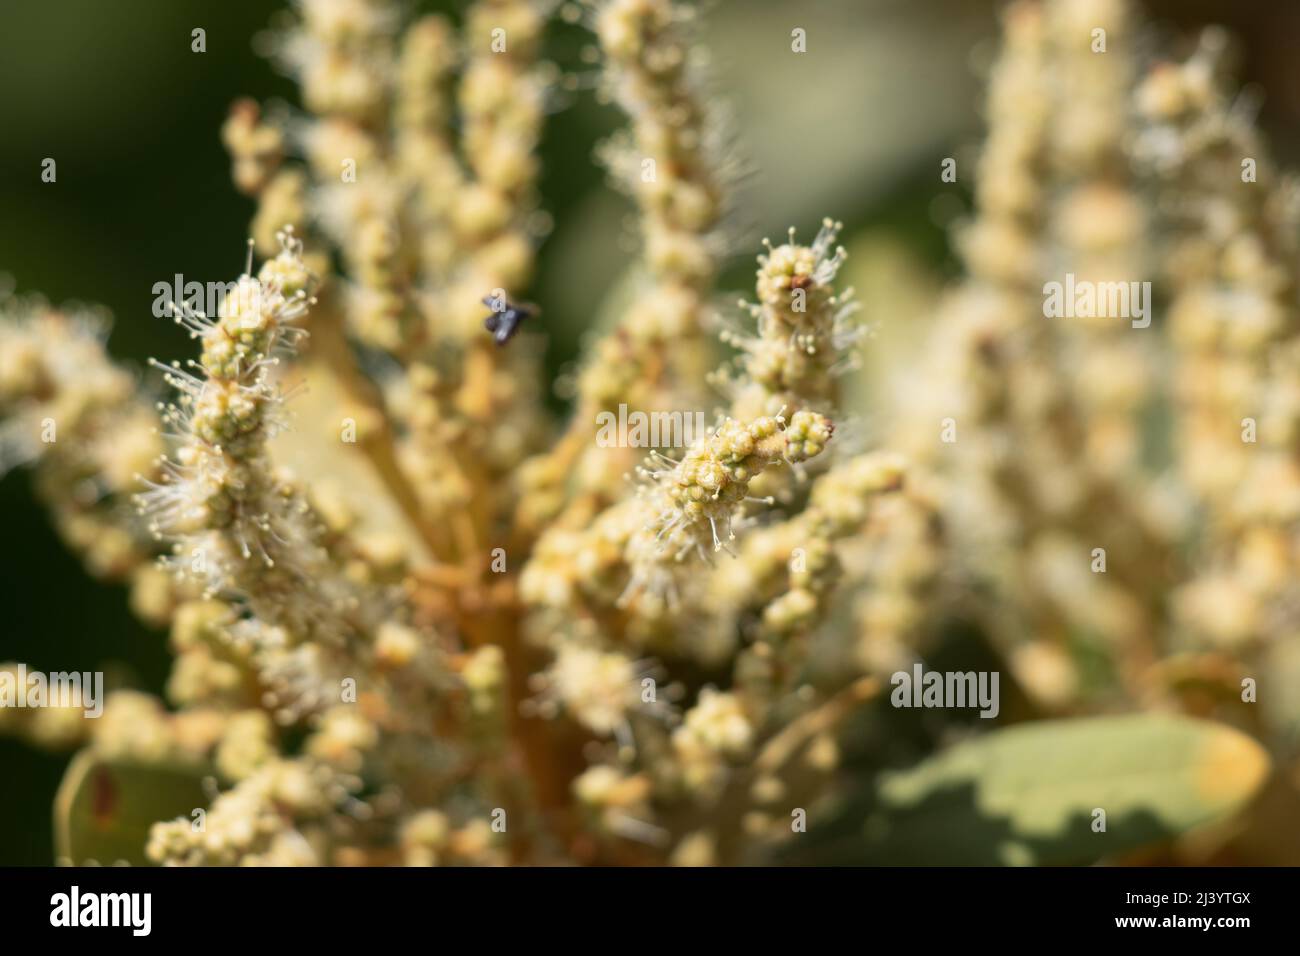 Floraison verte étaminée racemose catkin inflorescences de Chrysolepis sempervirens, Fagaceae, arbuste indigène dans les montagnes San Bernardino, été. Banque D'Images